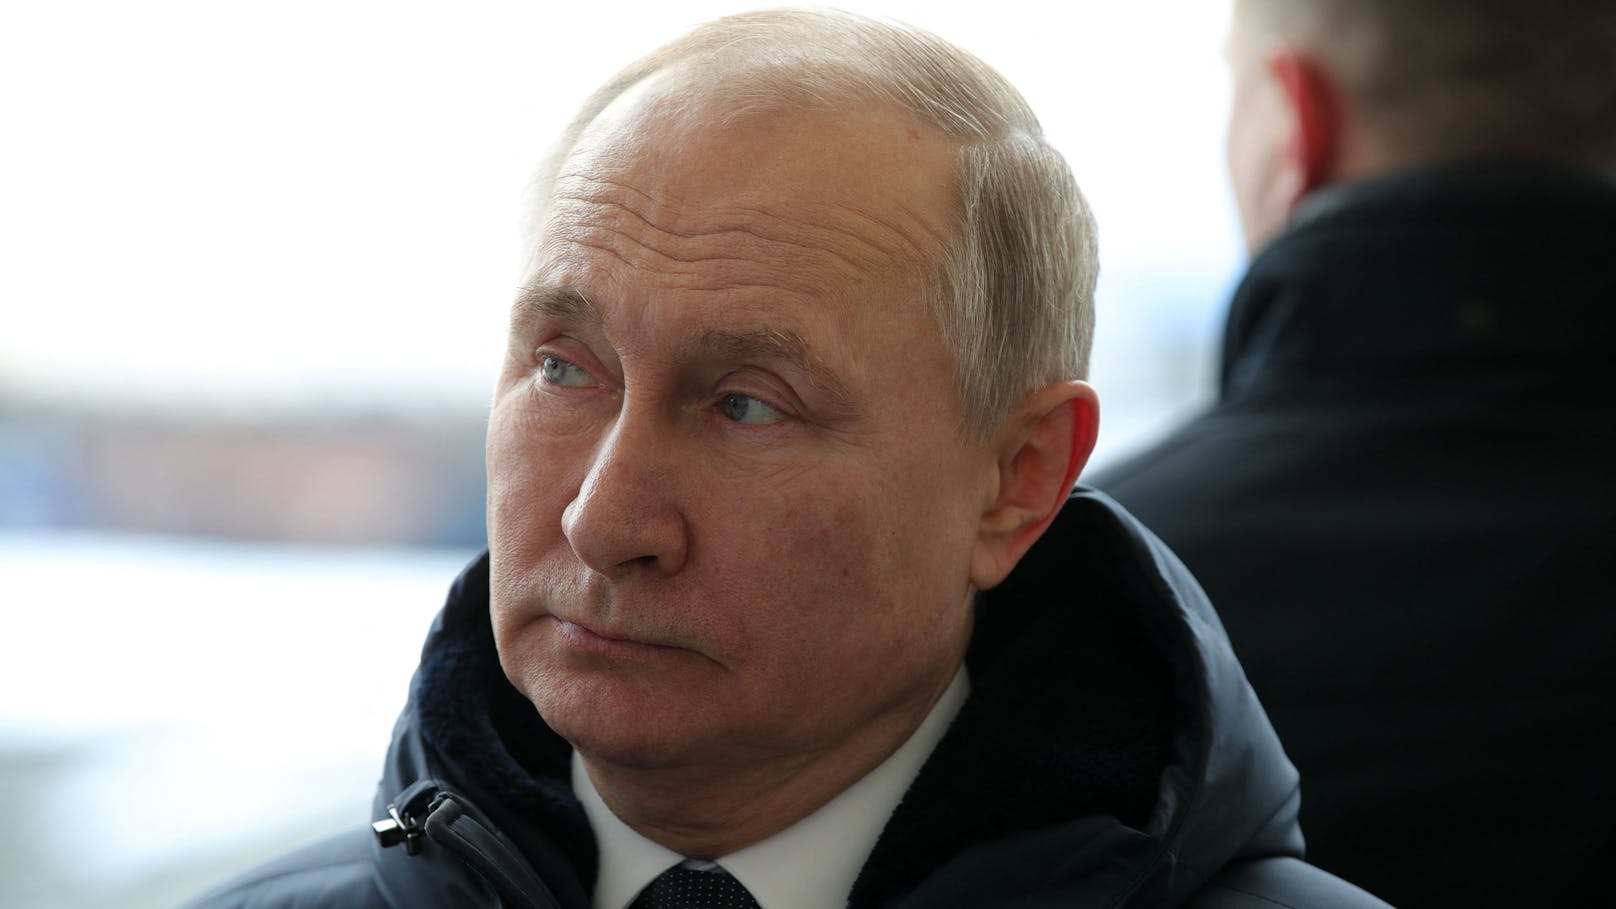 Kreml-Chef Wladimir Putin: "Klare und edle" Ziele